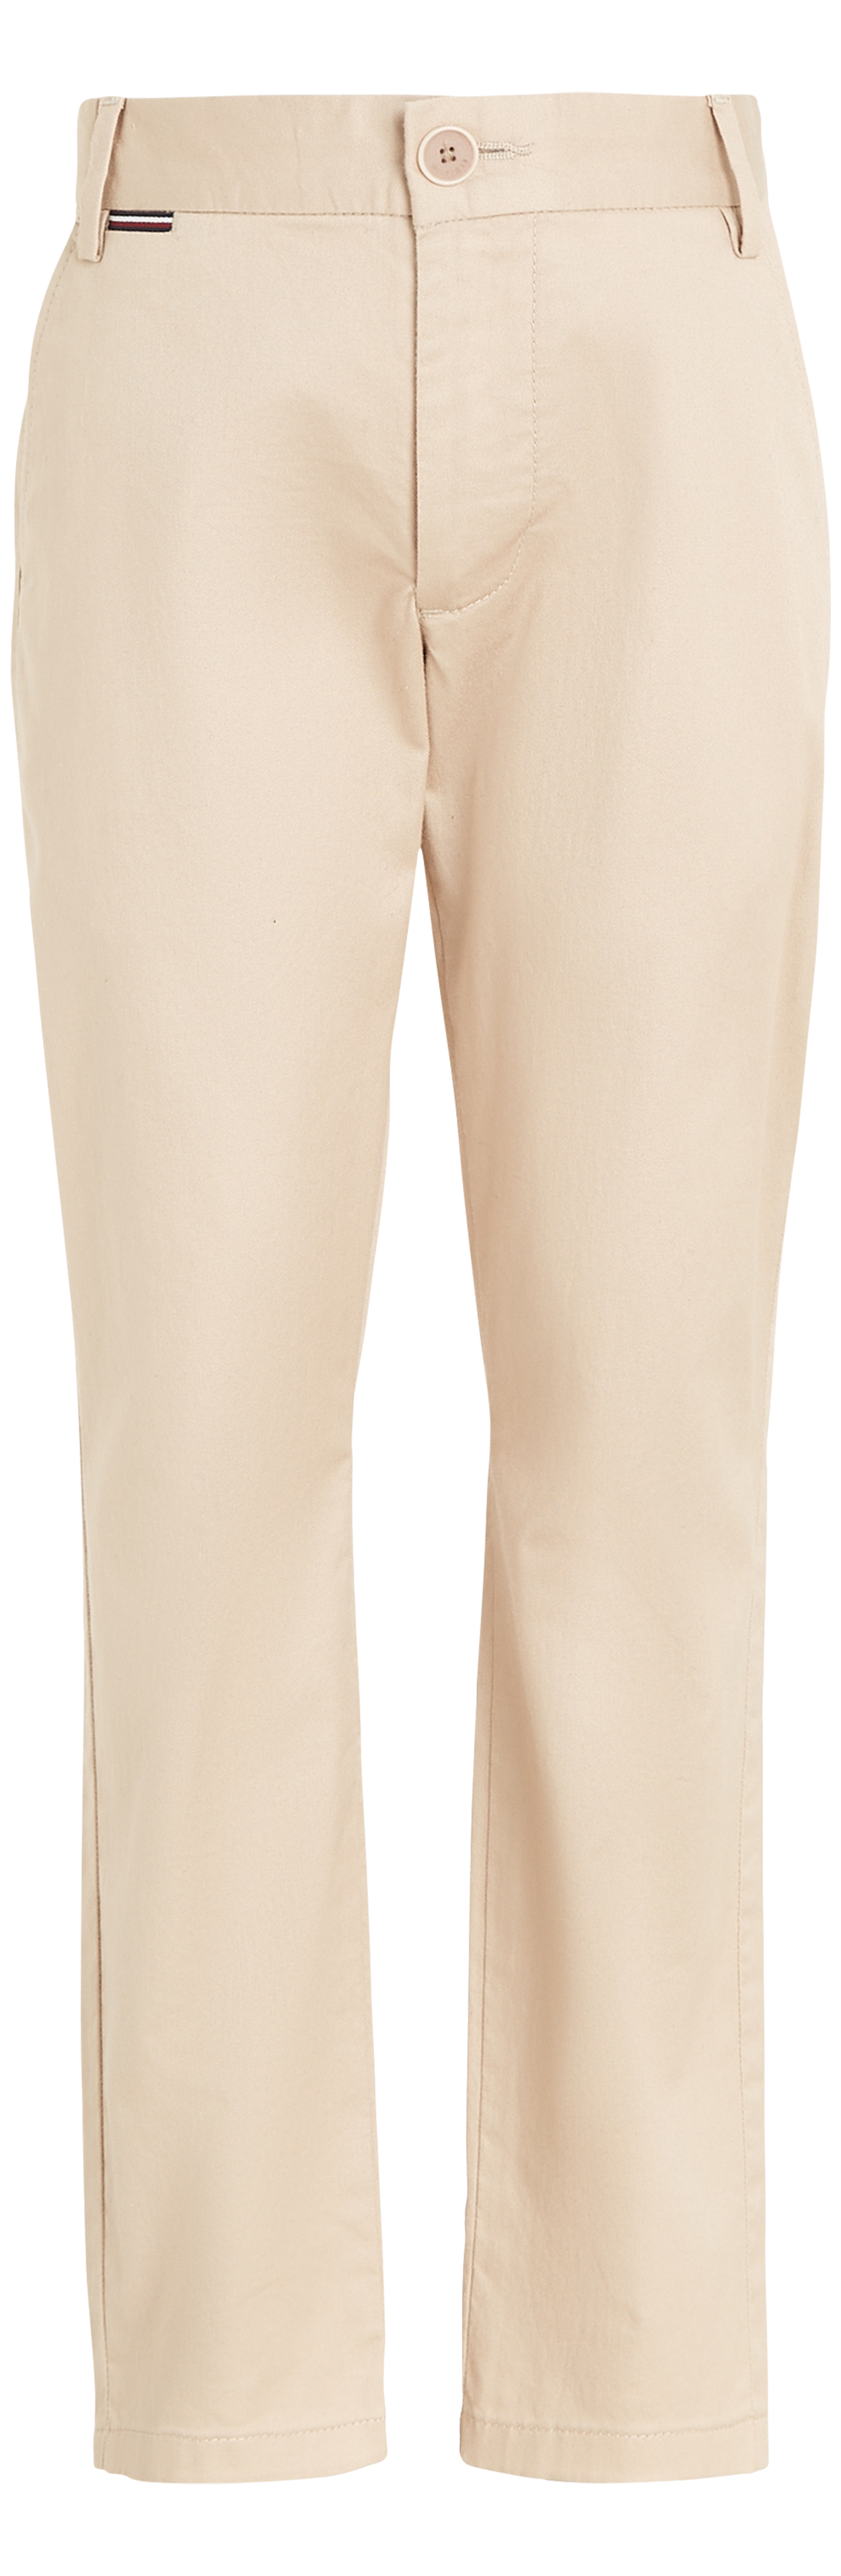 Pantalon chino coupe slim Junior Garçon Tommy Hilfiger en coton biologique mélangé beige